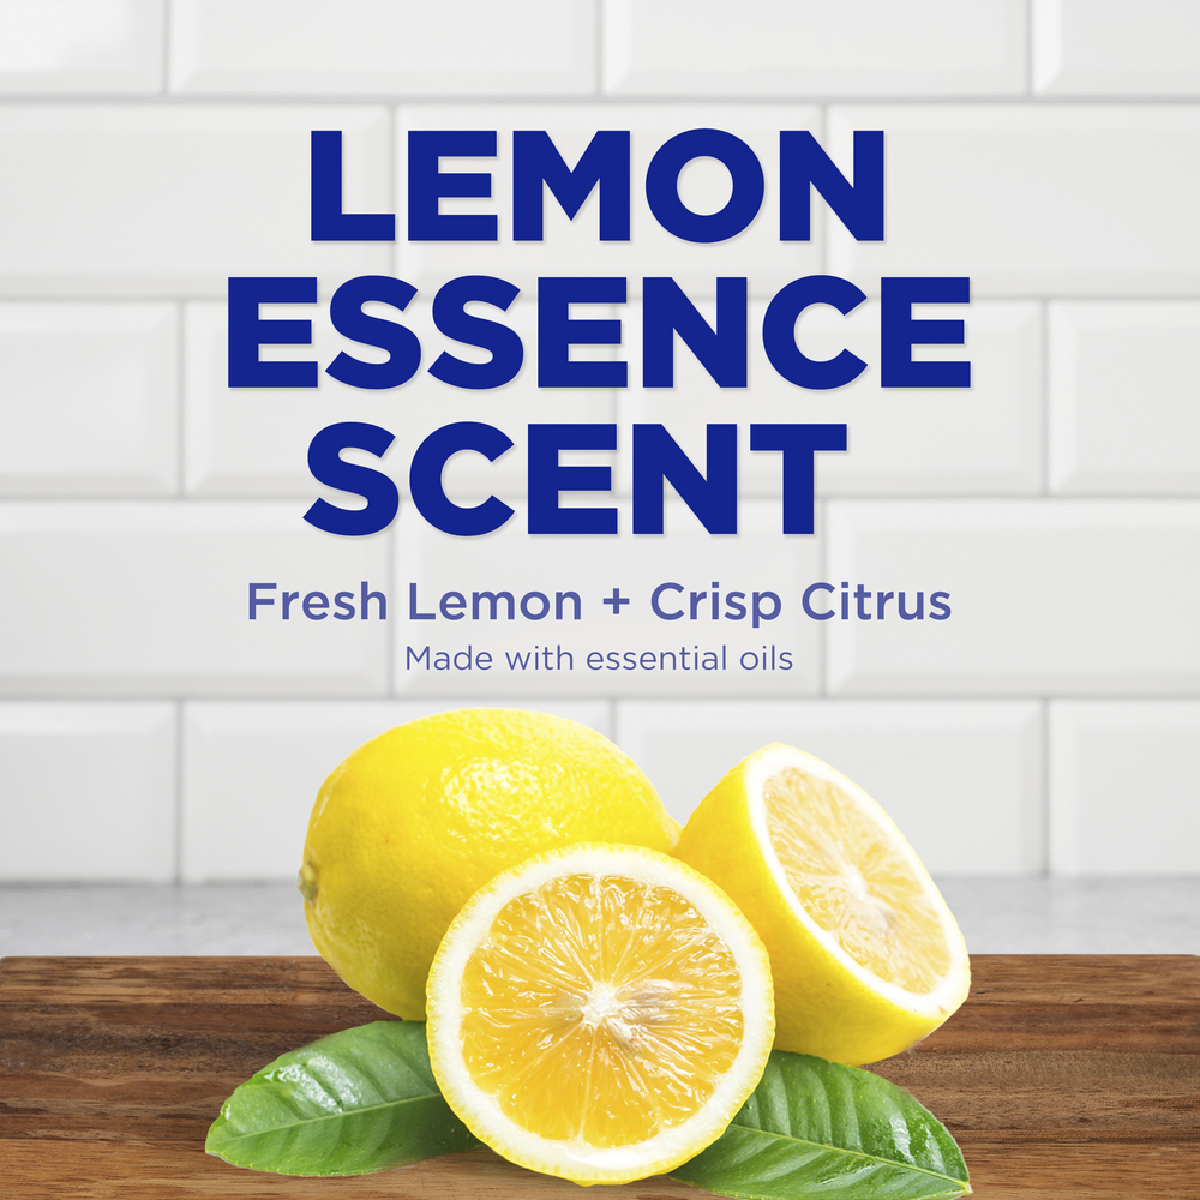 Lemon Essence Scent